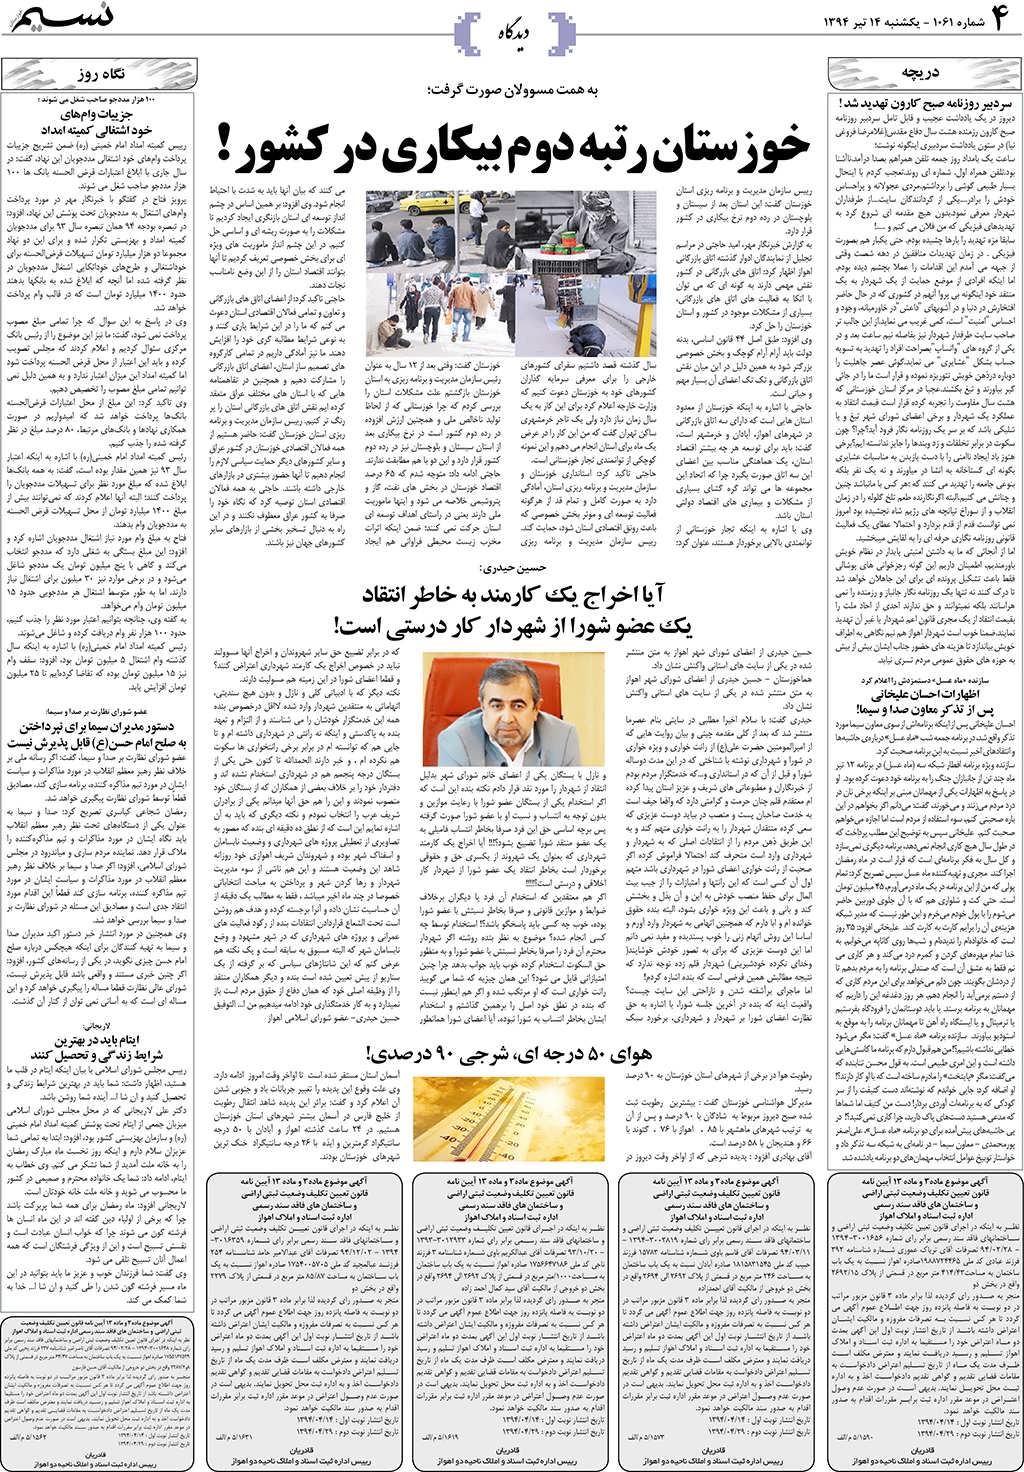 صفحه دیدگاه روزنامه نسیم شماره 1061